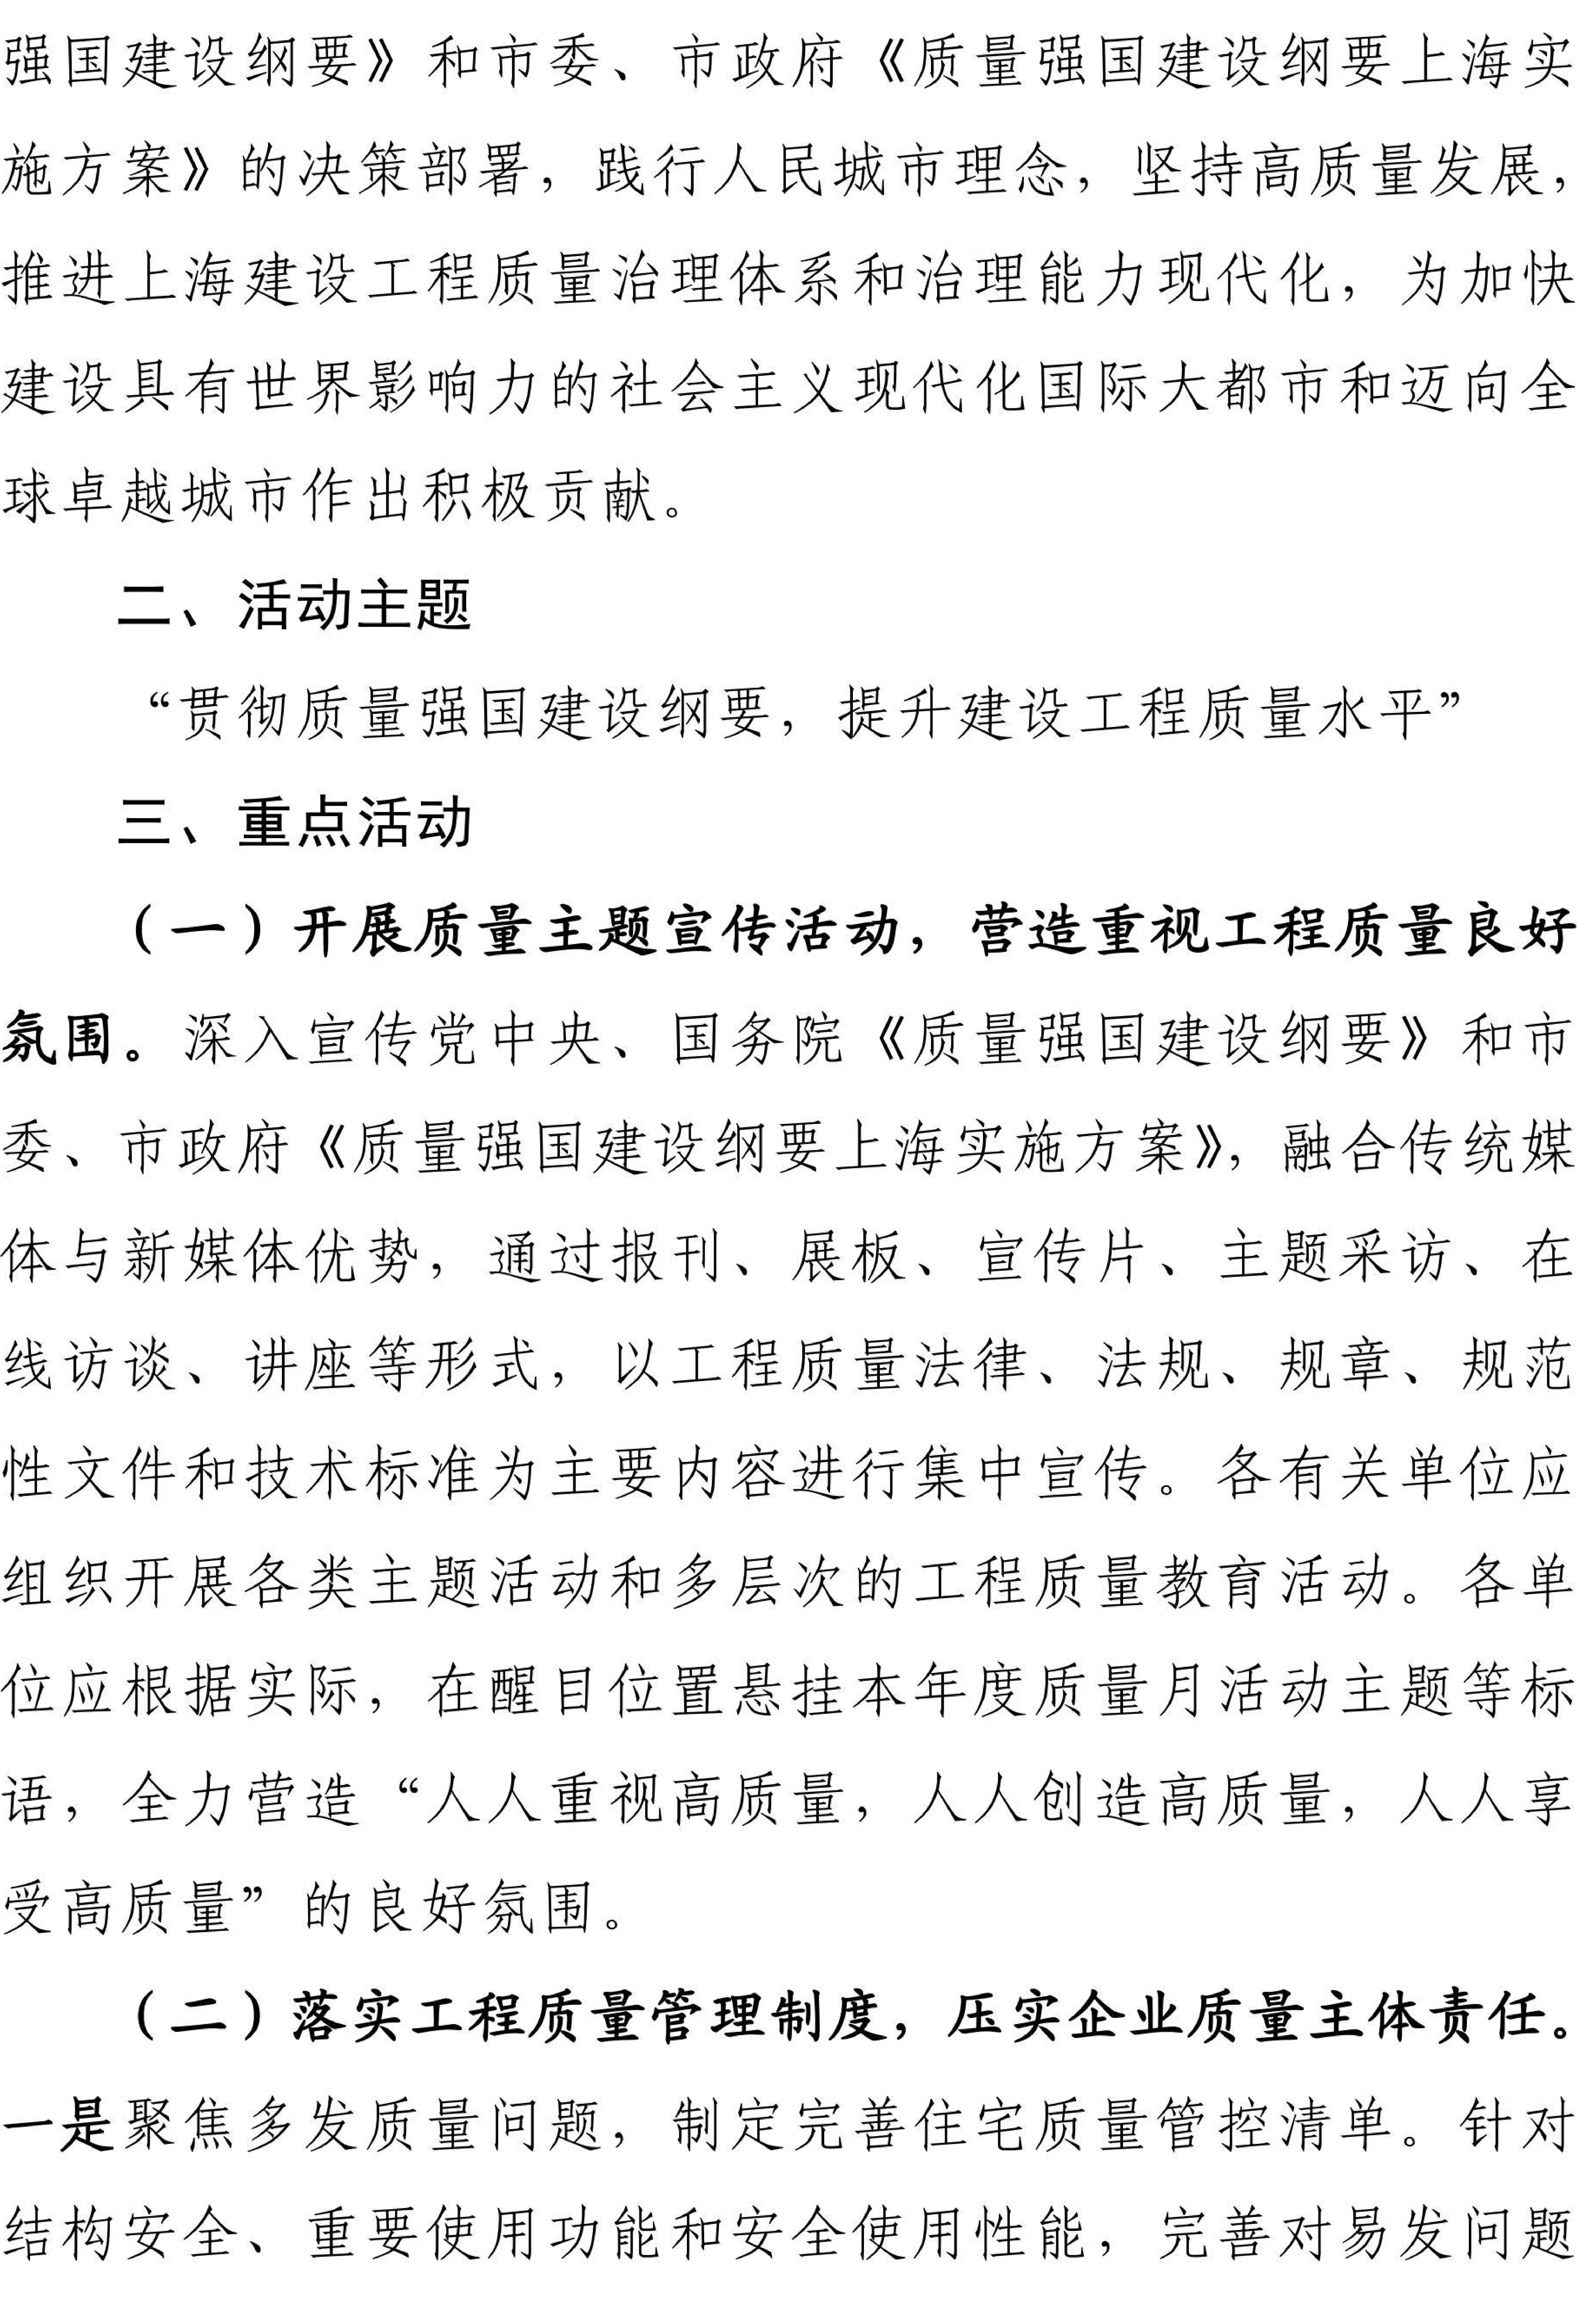 关于开展2023年上海市建设系统“质量月”活动的通知222_01.jpg